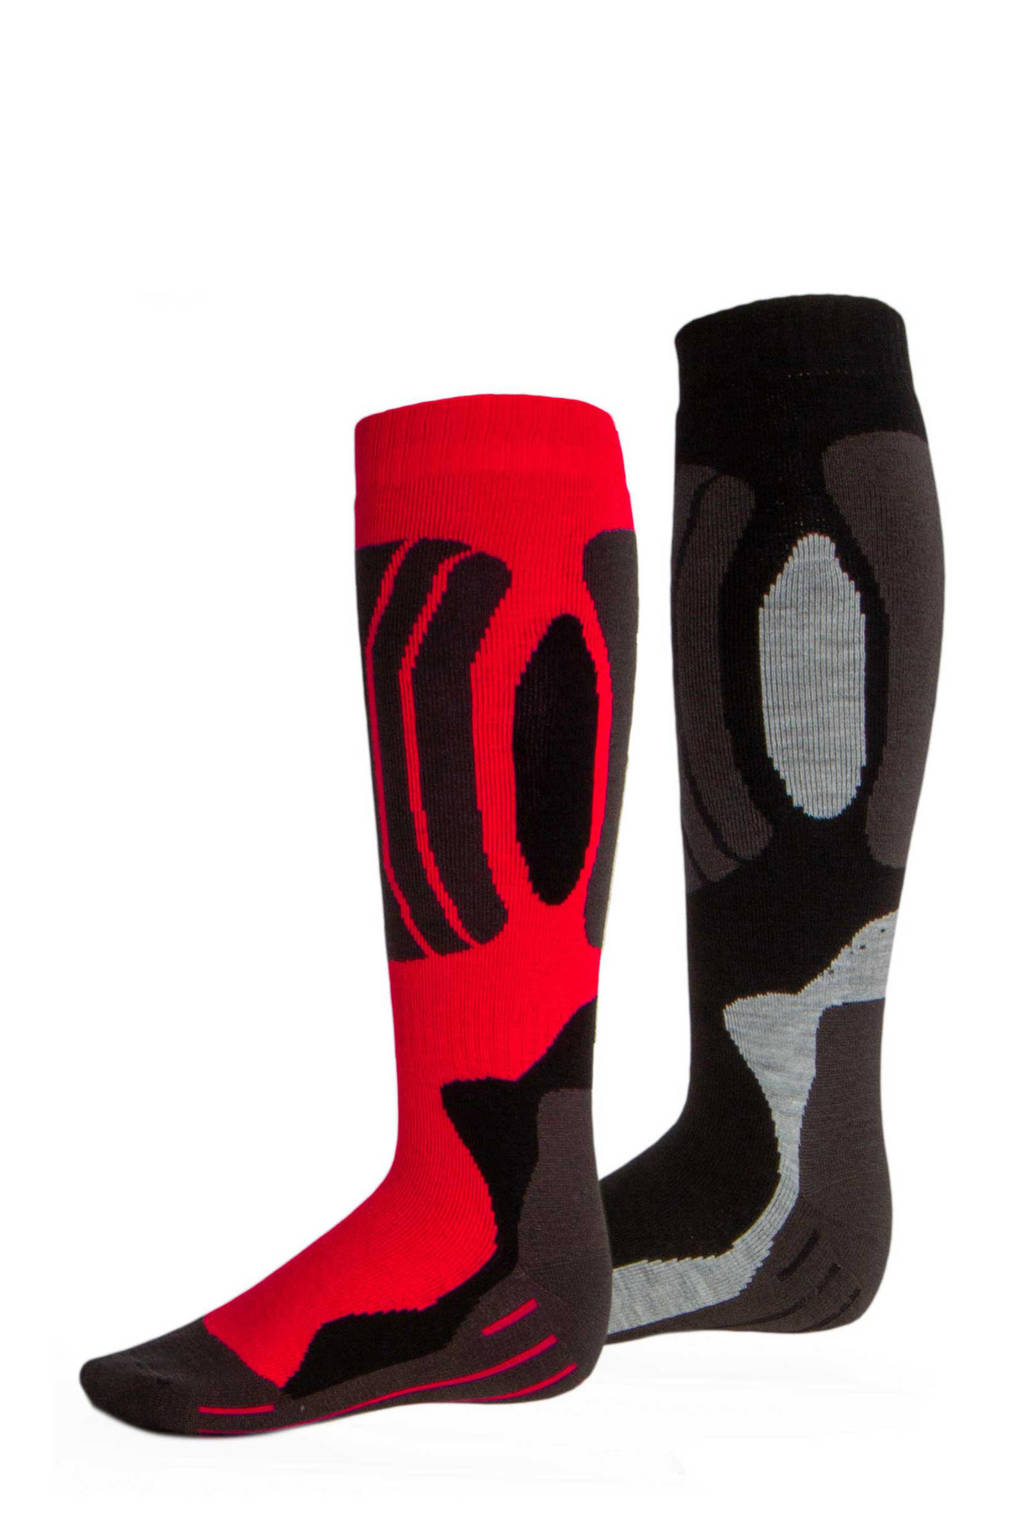 Rucanor skisokken rood/zwart/grijs (set van 2), Rood/zwart/grijs